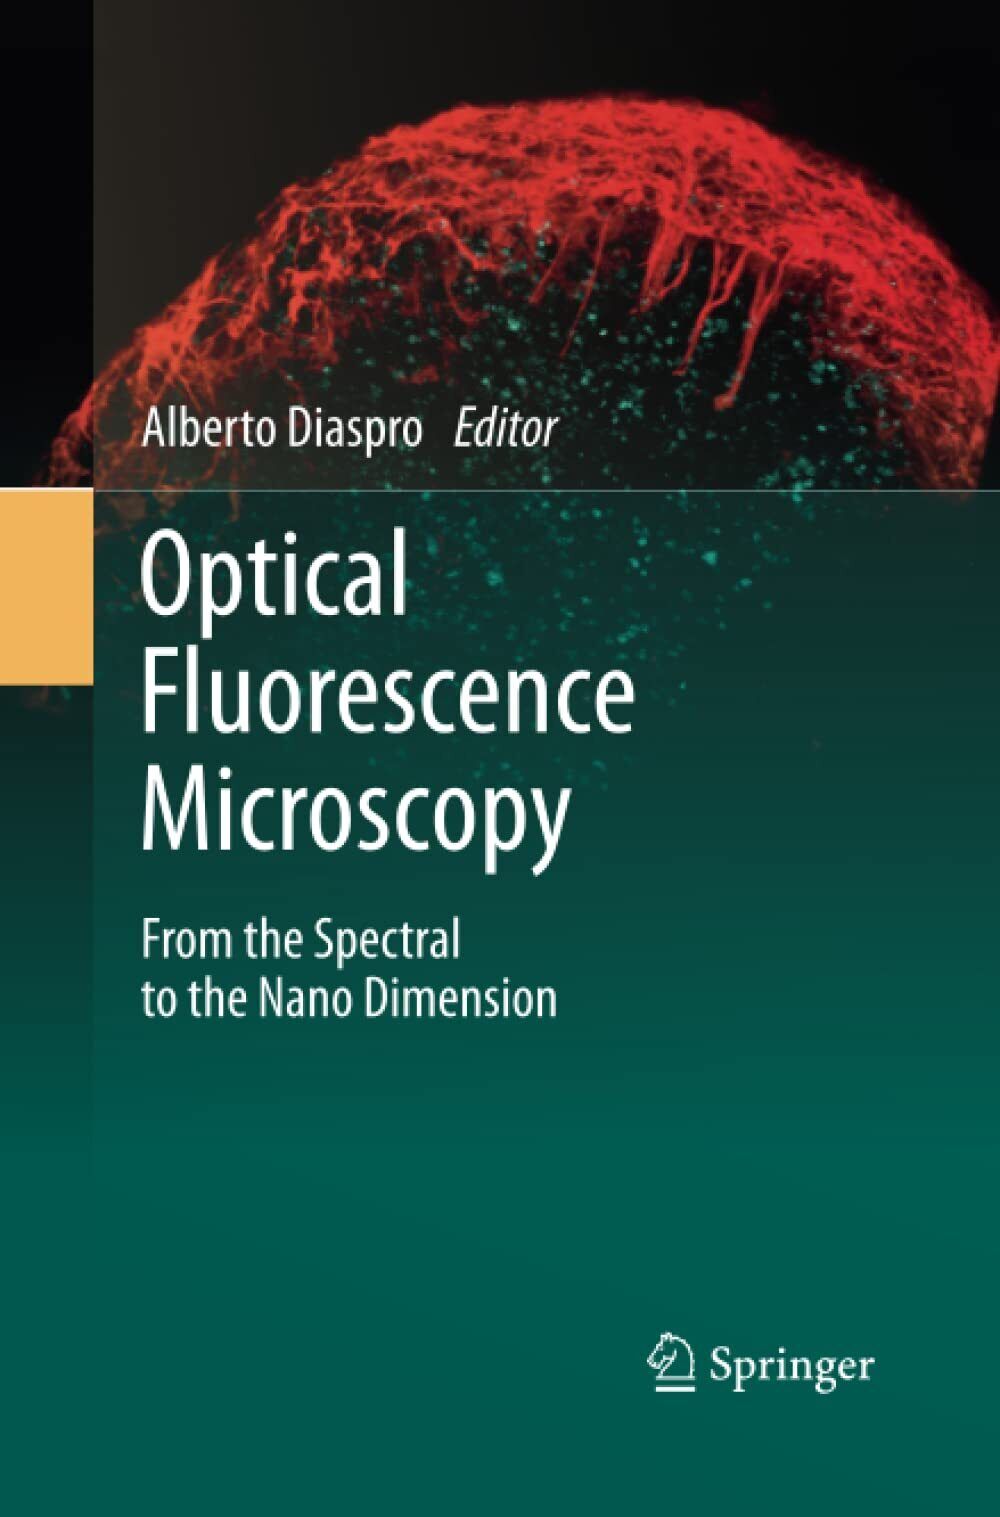 Optical Fluorescence Microscopy - Alberto Diaspro - Springer, 2014